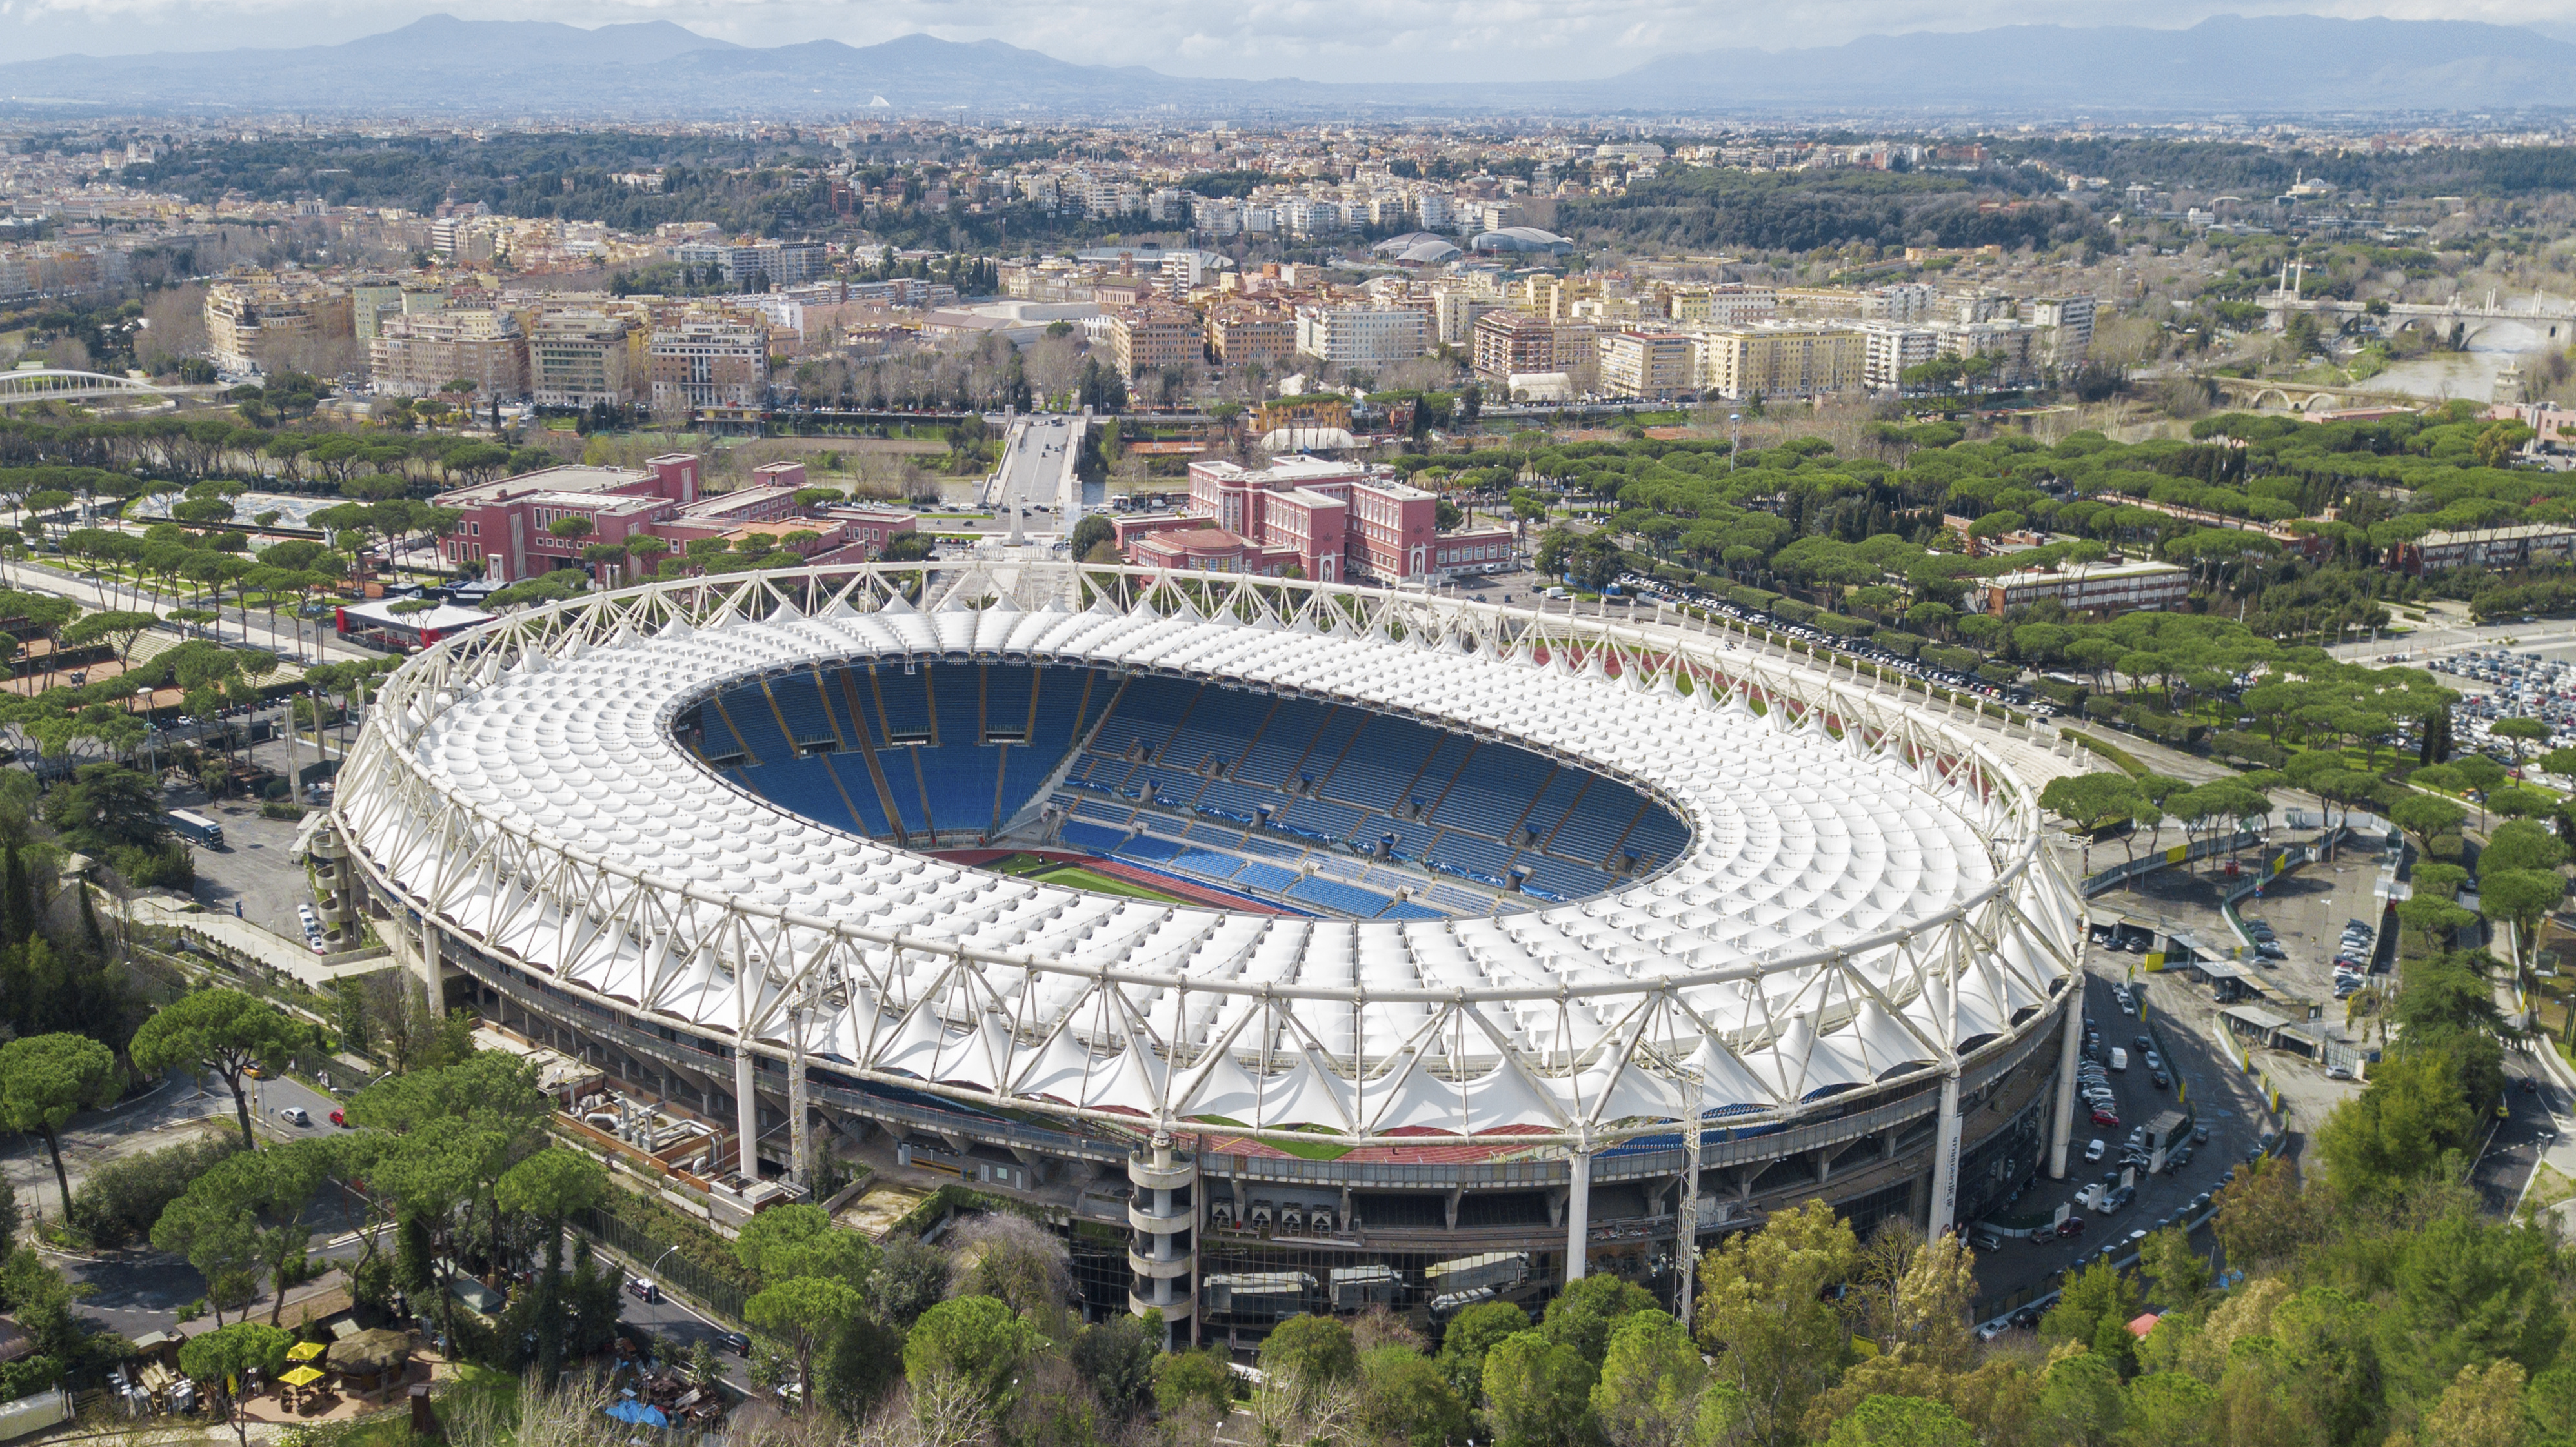 stadio olimpico rome visit